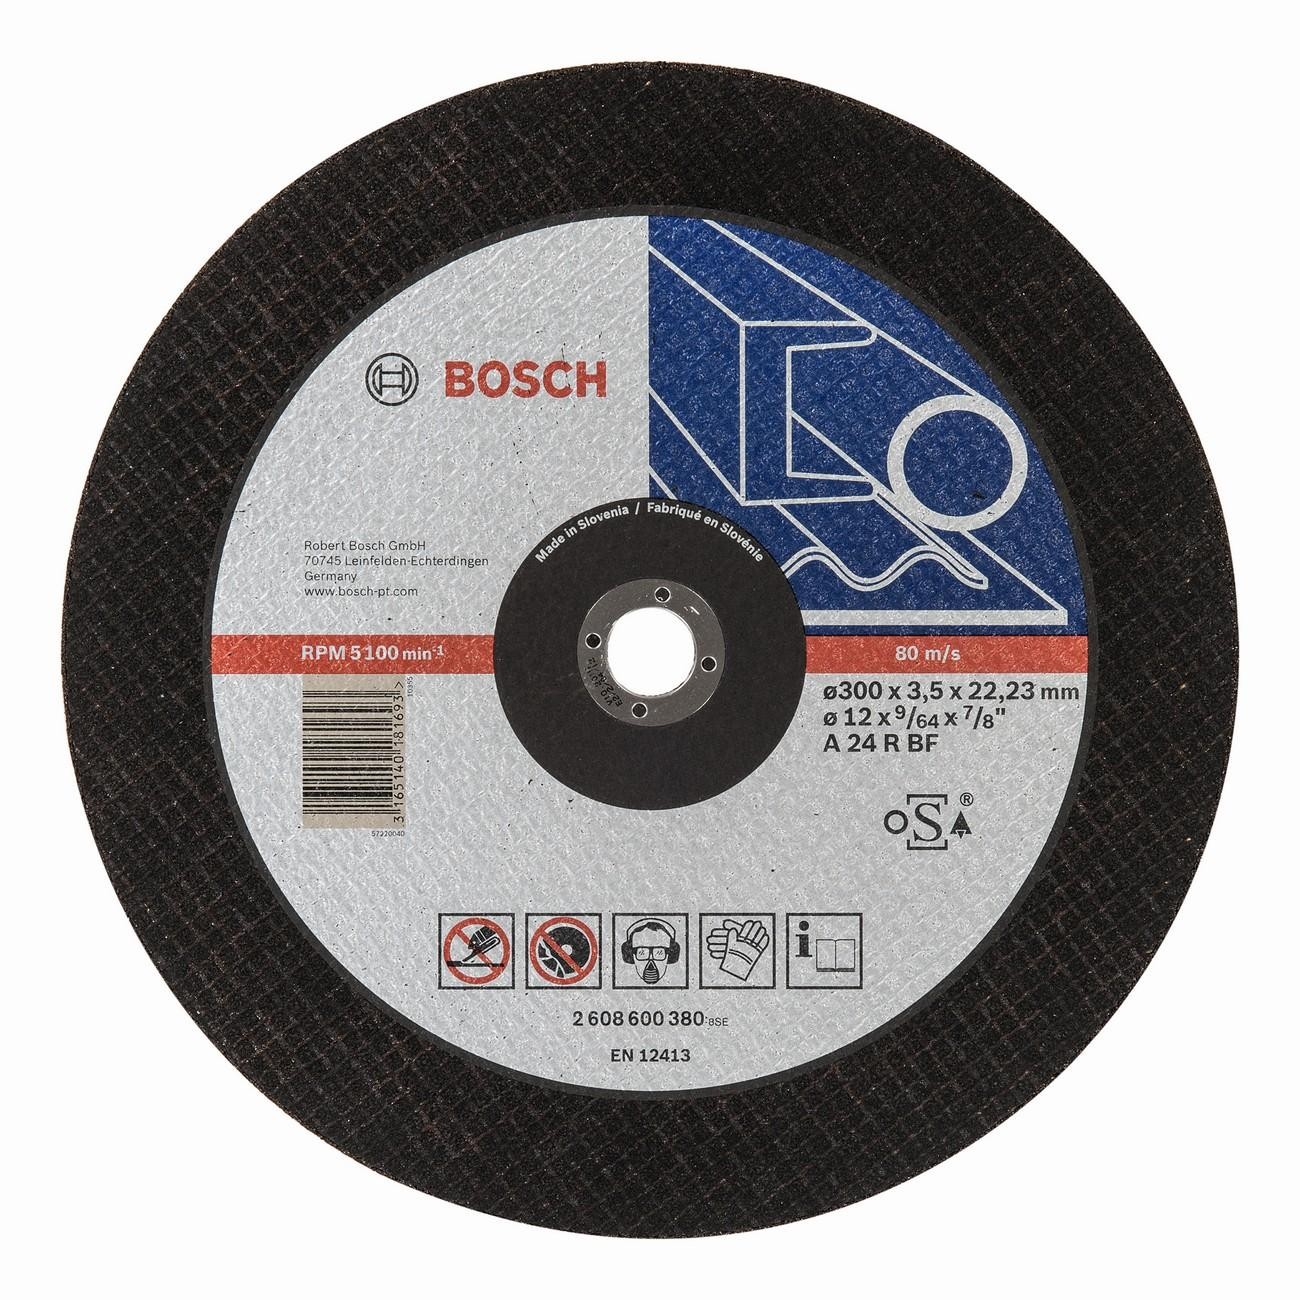 BOSCH Professional A 24 R BF Диск за рязане на метал 300 мм 3.5 мм (2608600380)